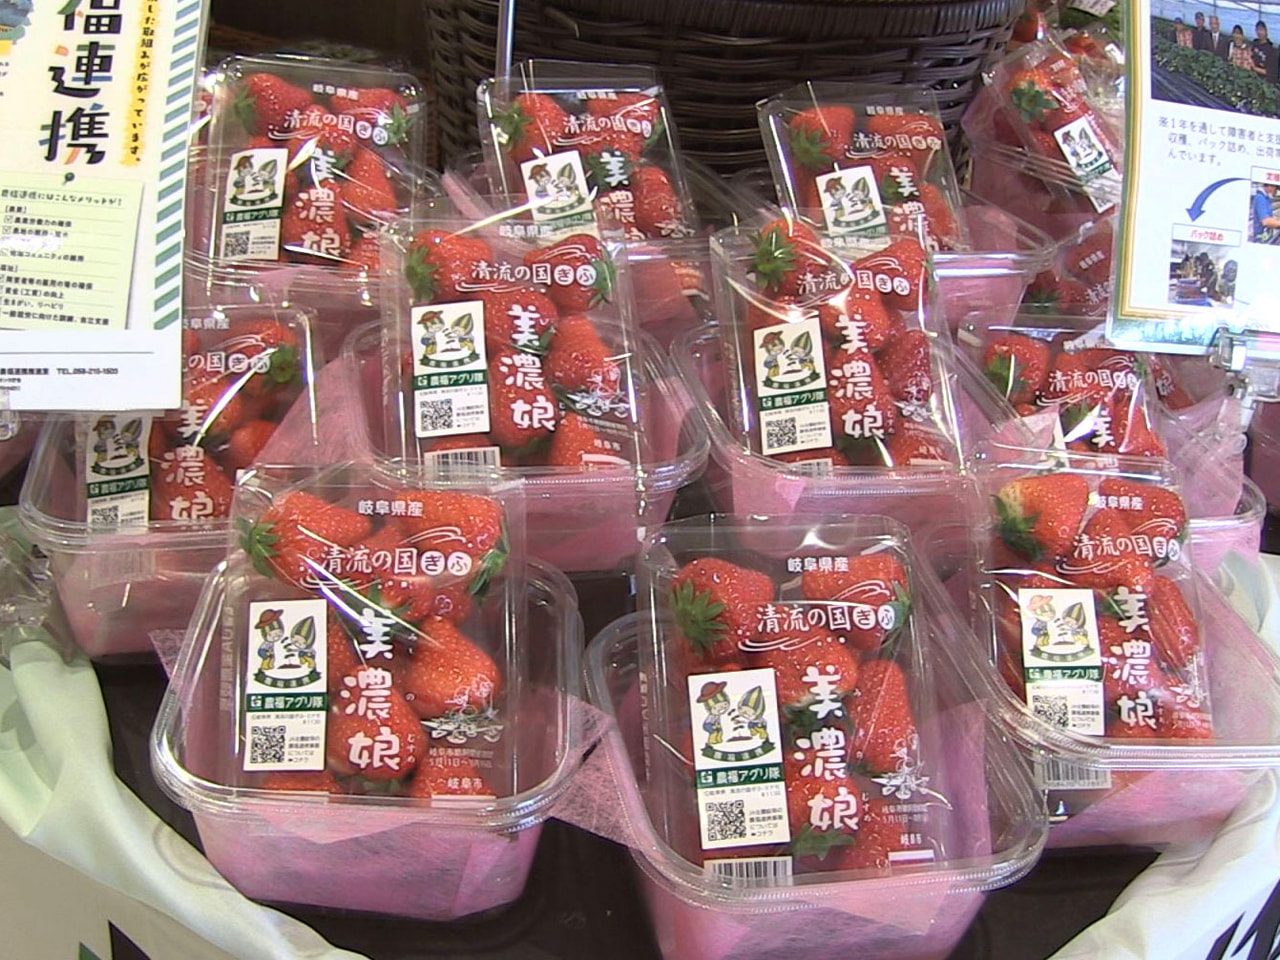 農業と福祉が連携した「農福連携」の一環で、障害者らが生産した県産ブランドのイチゴ...